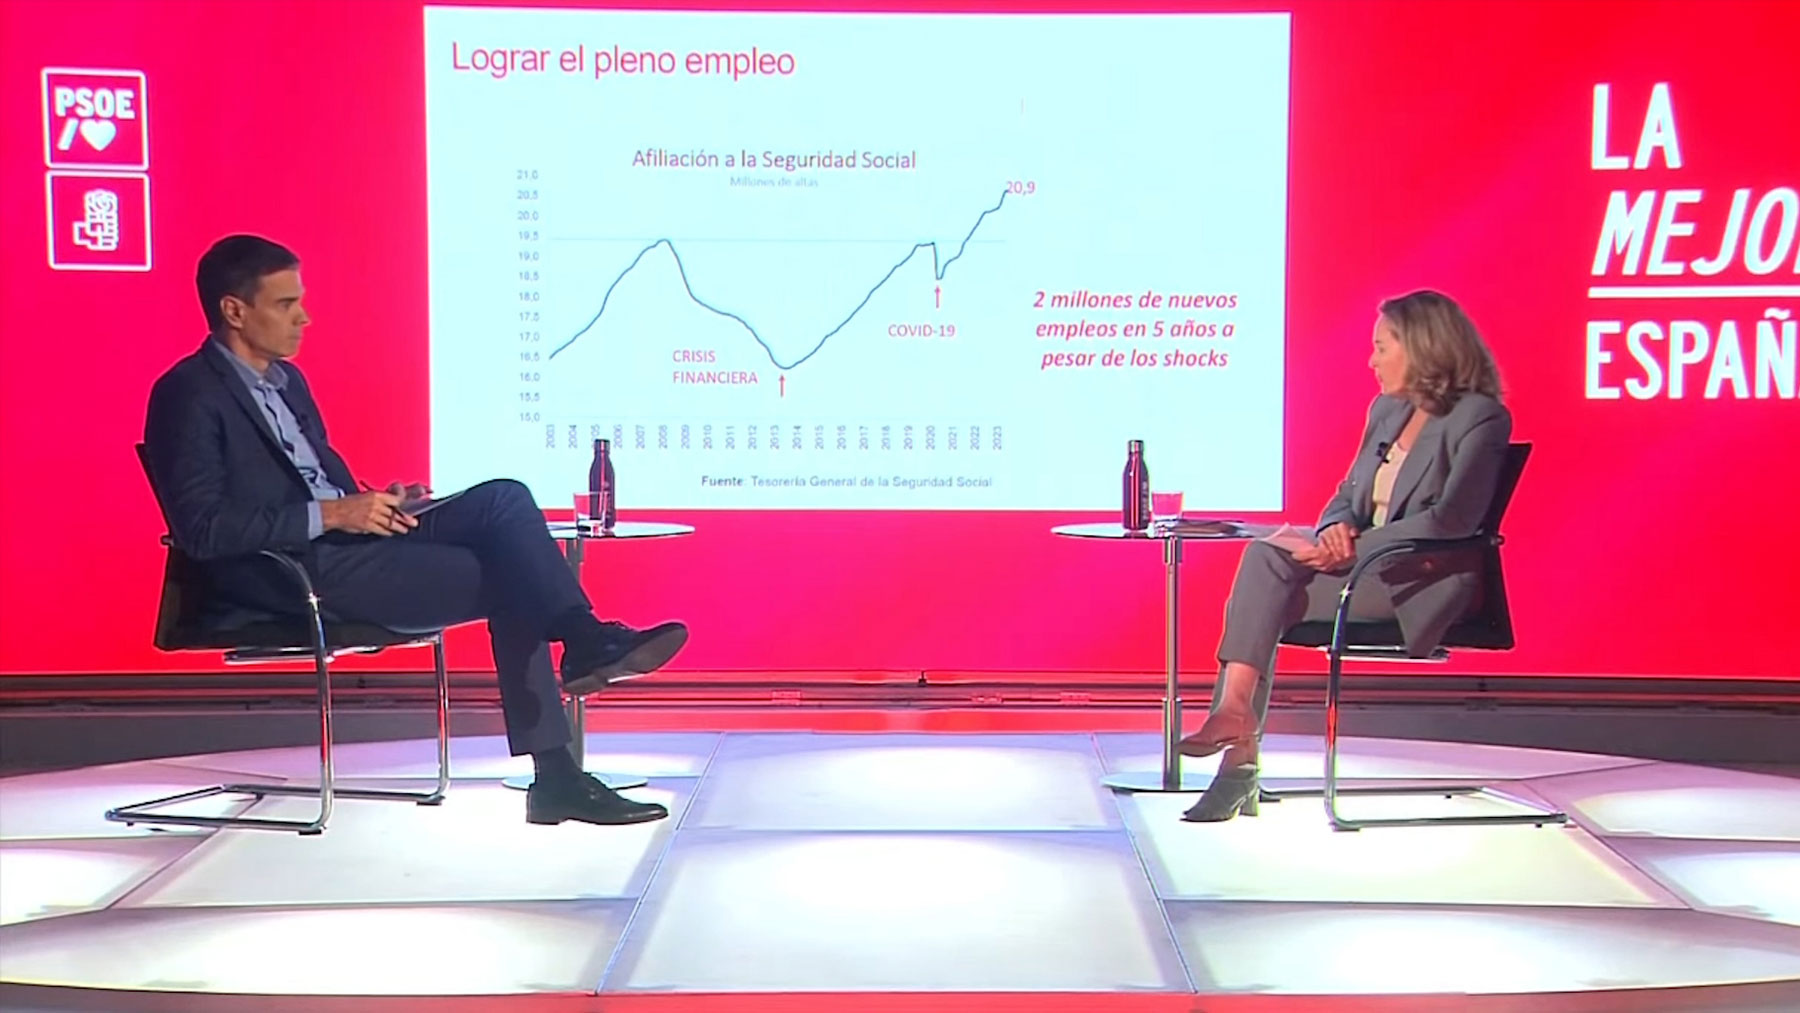 Pedro Sánchez y Nadia Calviño conversan sobre el pleno empleo en una entrevista electoral producida por el propio PSOE